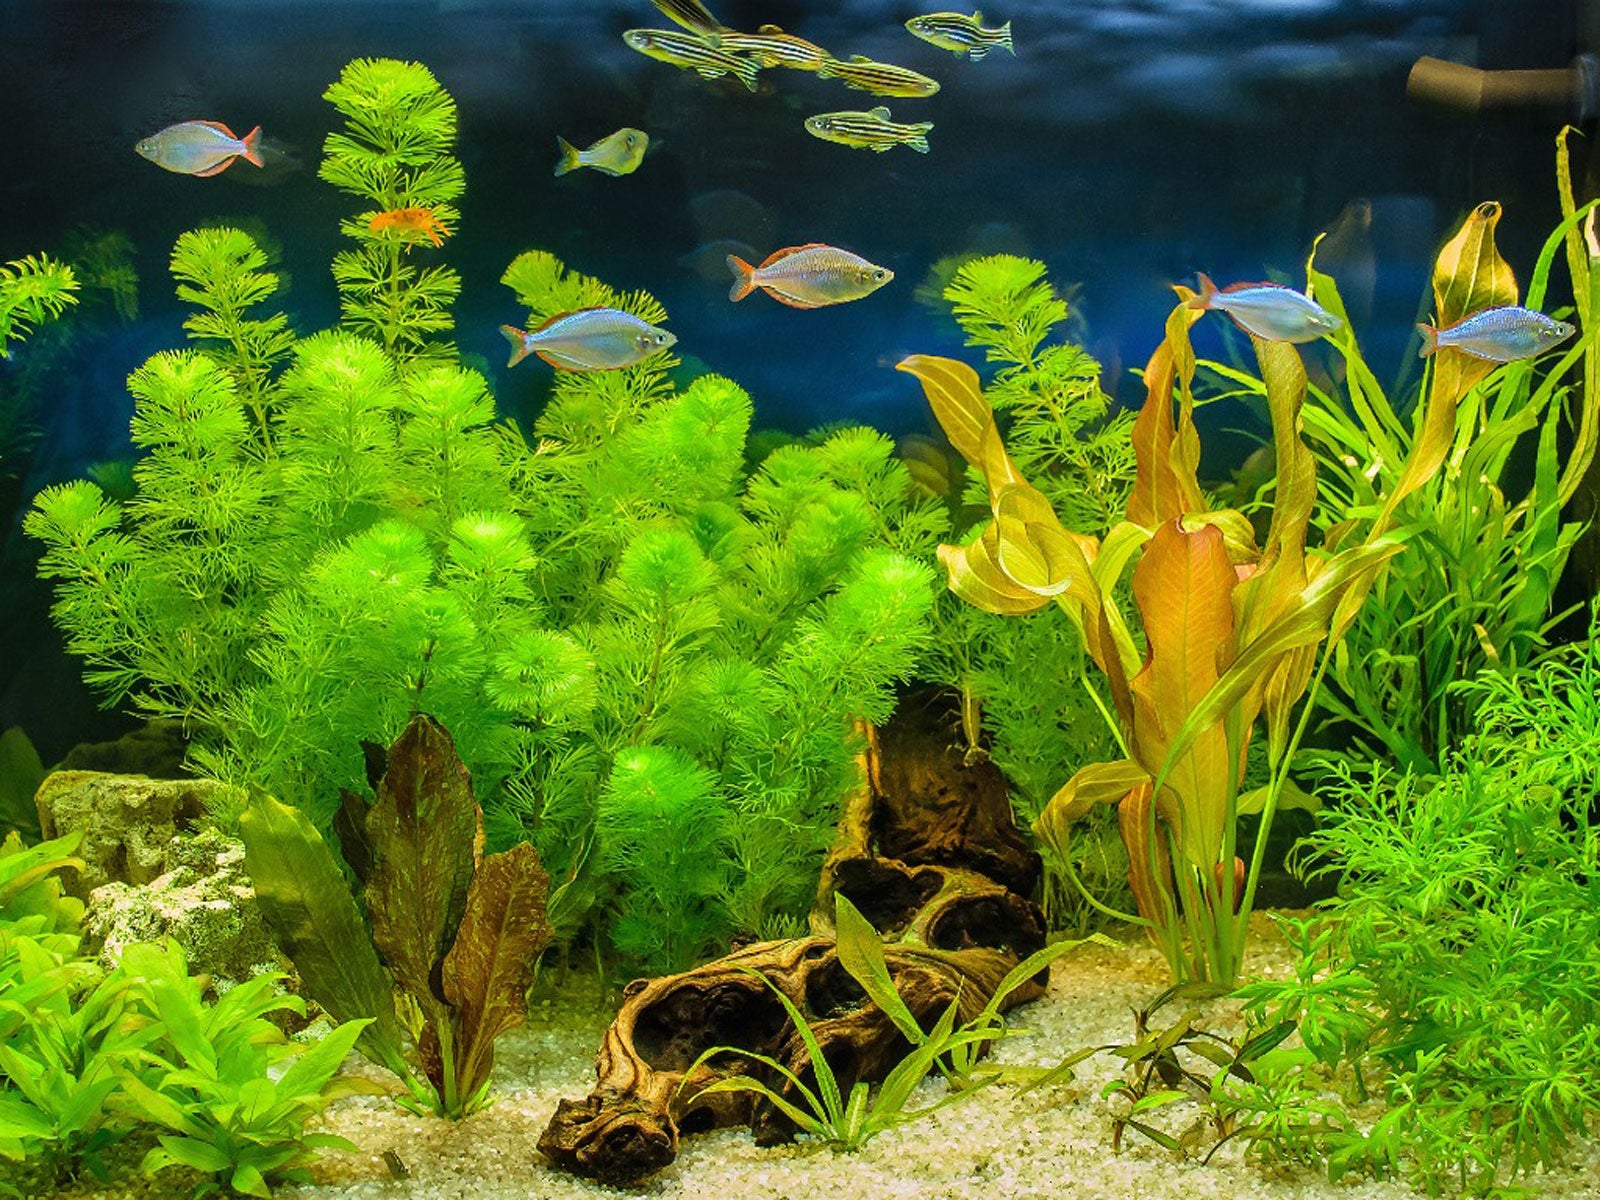 Live Aquarium Plants Live Fish Tank Water Plants Artificial Decor Plants  Grass